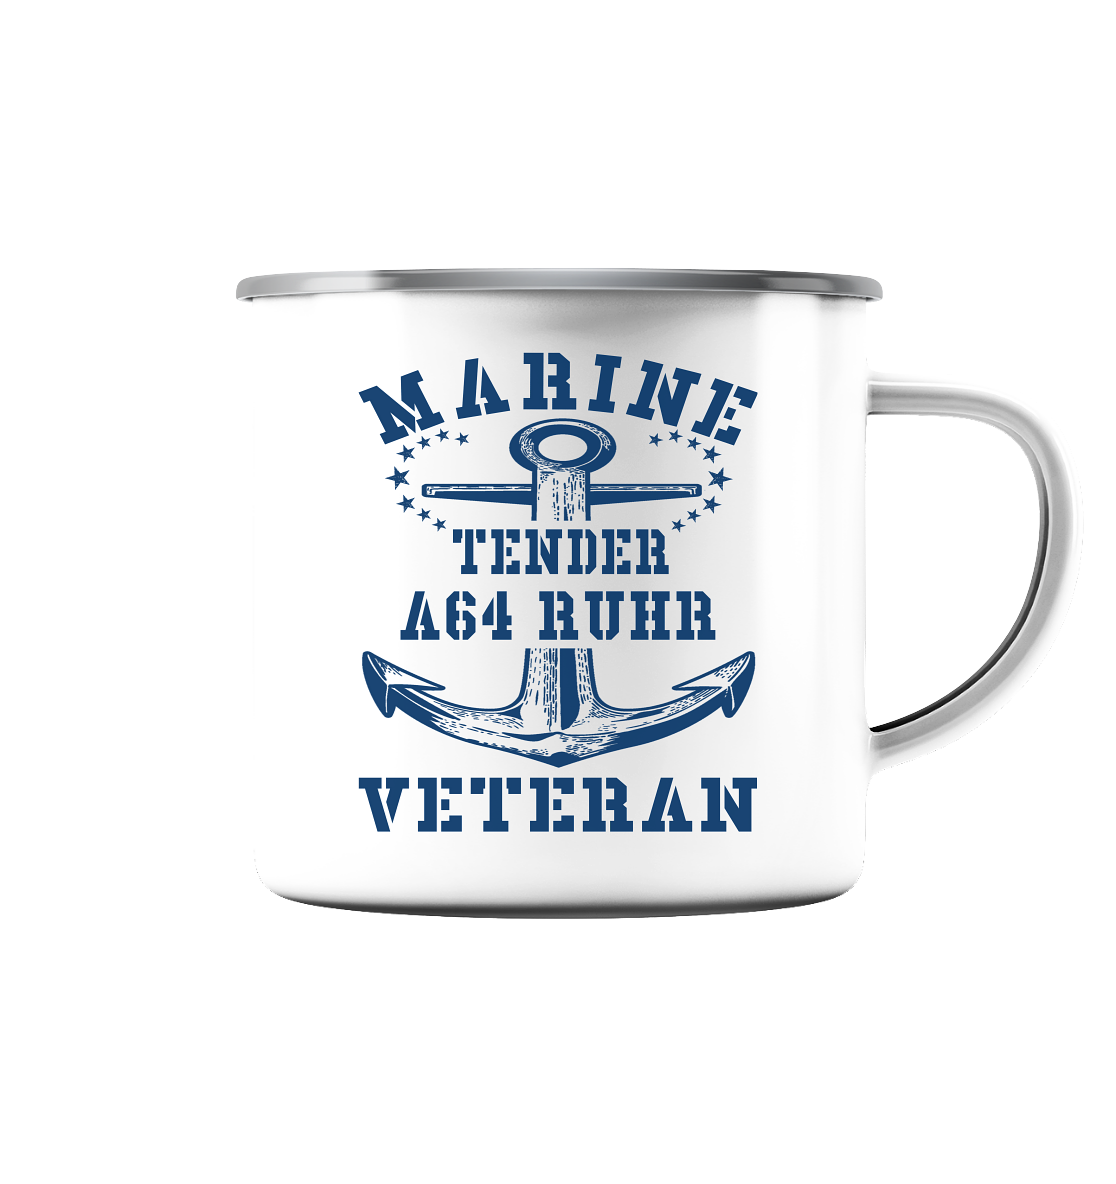 Tender A64 RUHR Marine Veteran - Emaille Tasse (Silber)